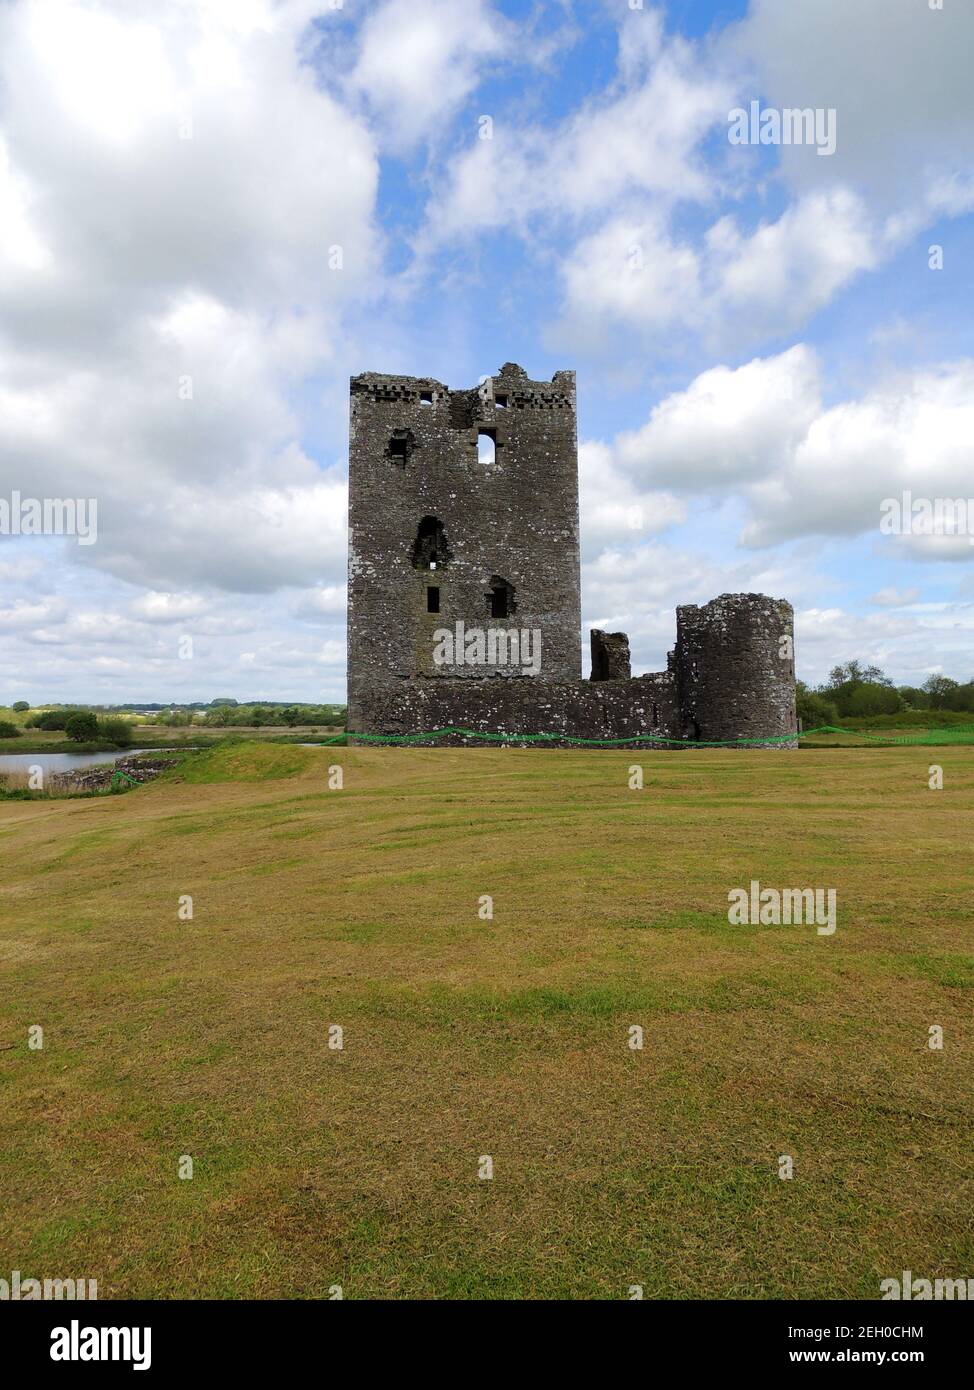 Threave Castillo en el río Dee cerca del Castillo Douglas, Dumfries y galloway, Escocia. El castillo se encuentra en una isla y sólo es accesible por un pequeño paseo en barco. Fue construido en la década de 1370 por Archibald el Grim y fue un bastión de los 'Douglases Negros', Earls de Douglas y Lores de Galloway. La casa de la guarda y el artillero permanecen en pie. Después de un seige durante la Guerra del Obispo, los Covenanters ordenaron que los edificios se desmantelaran y que los materiales se desecharan para su uso por el público. Foto de stock